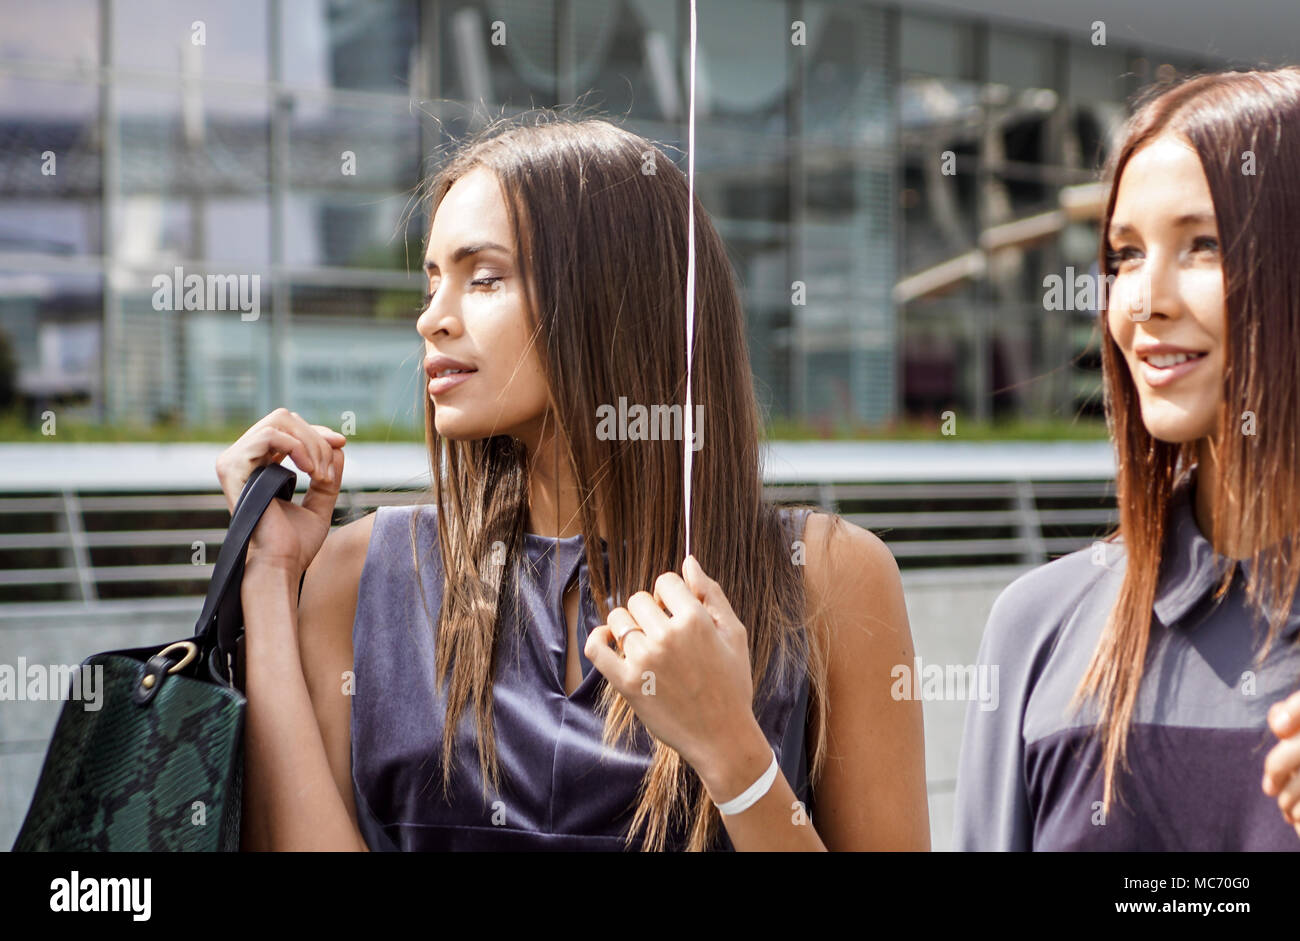 Mailand, Italien - 28 September: Menschen in Mailand auf der Modewoche, Italien am 28. SEPTEMBER 2017. Fashion Show Backstage mit Make-up-Artist und Friseur in der Straße Stockfoto